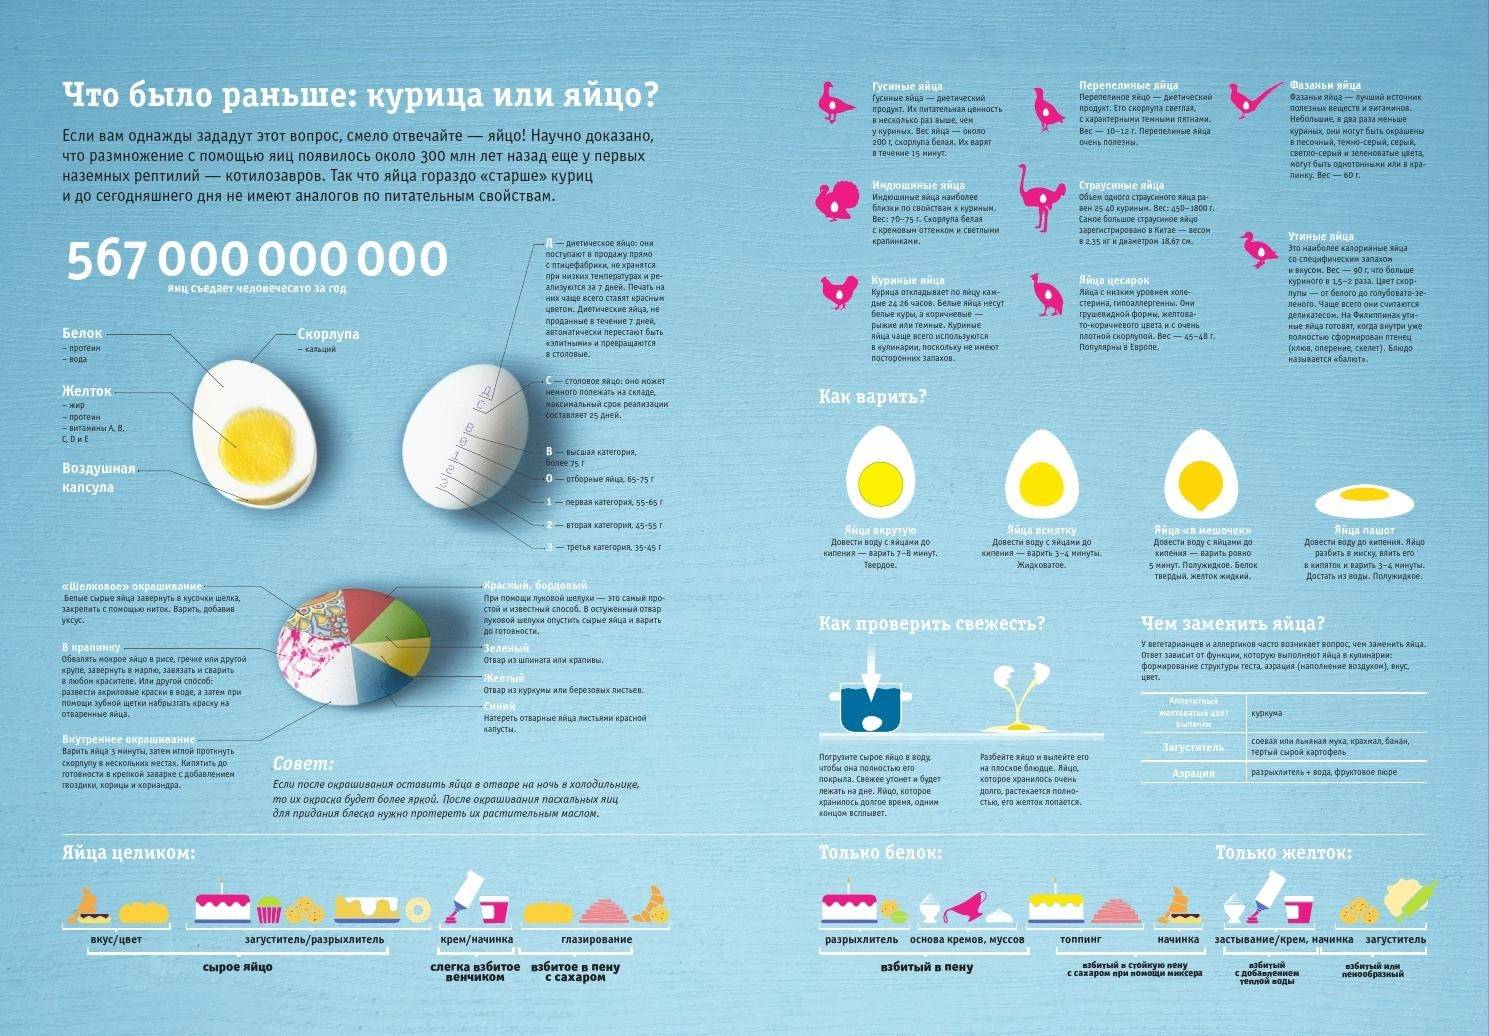 Сколько калорий в 1 вареном яйце